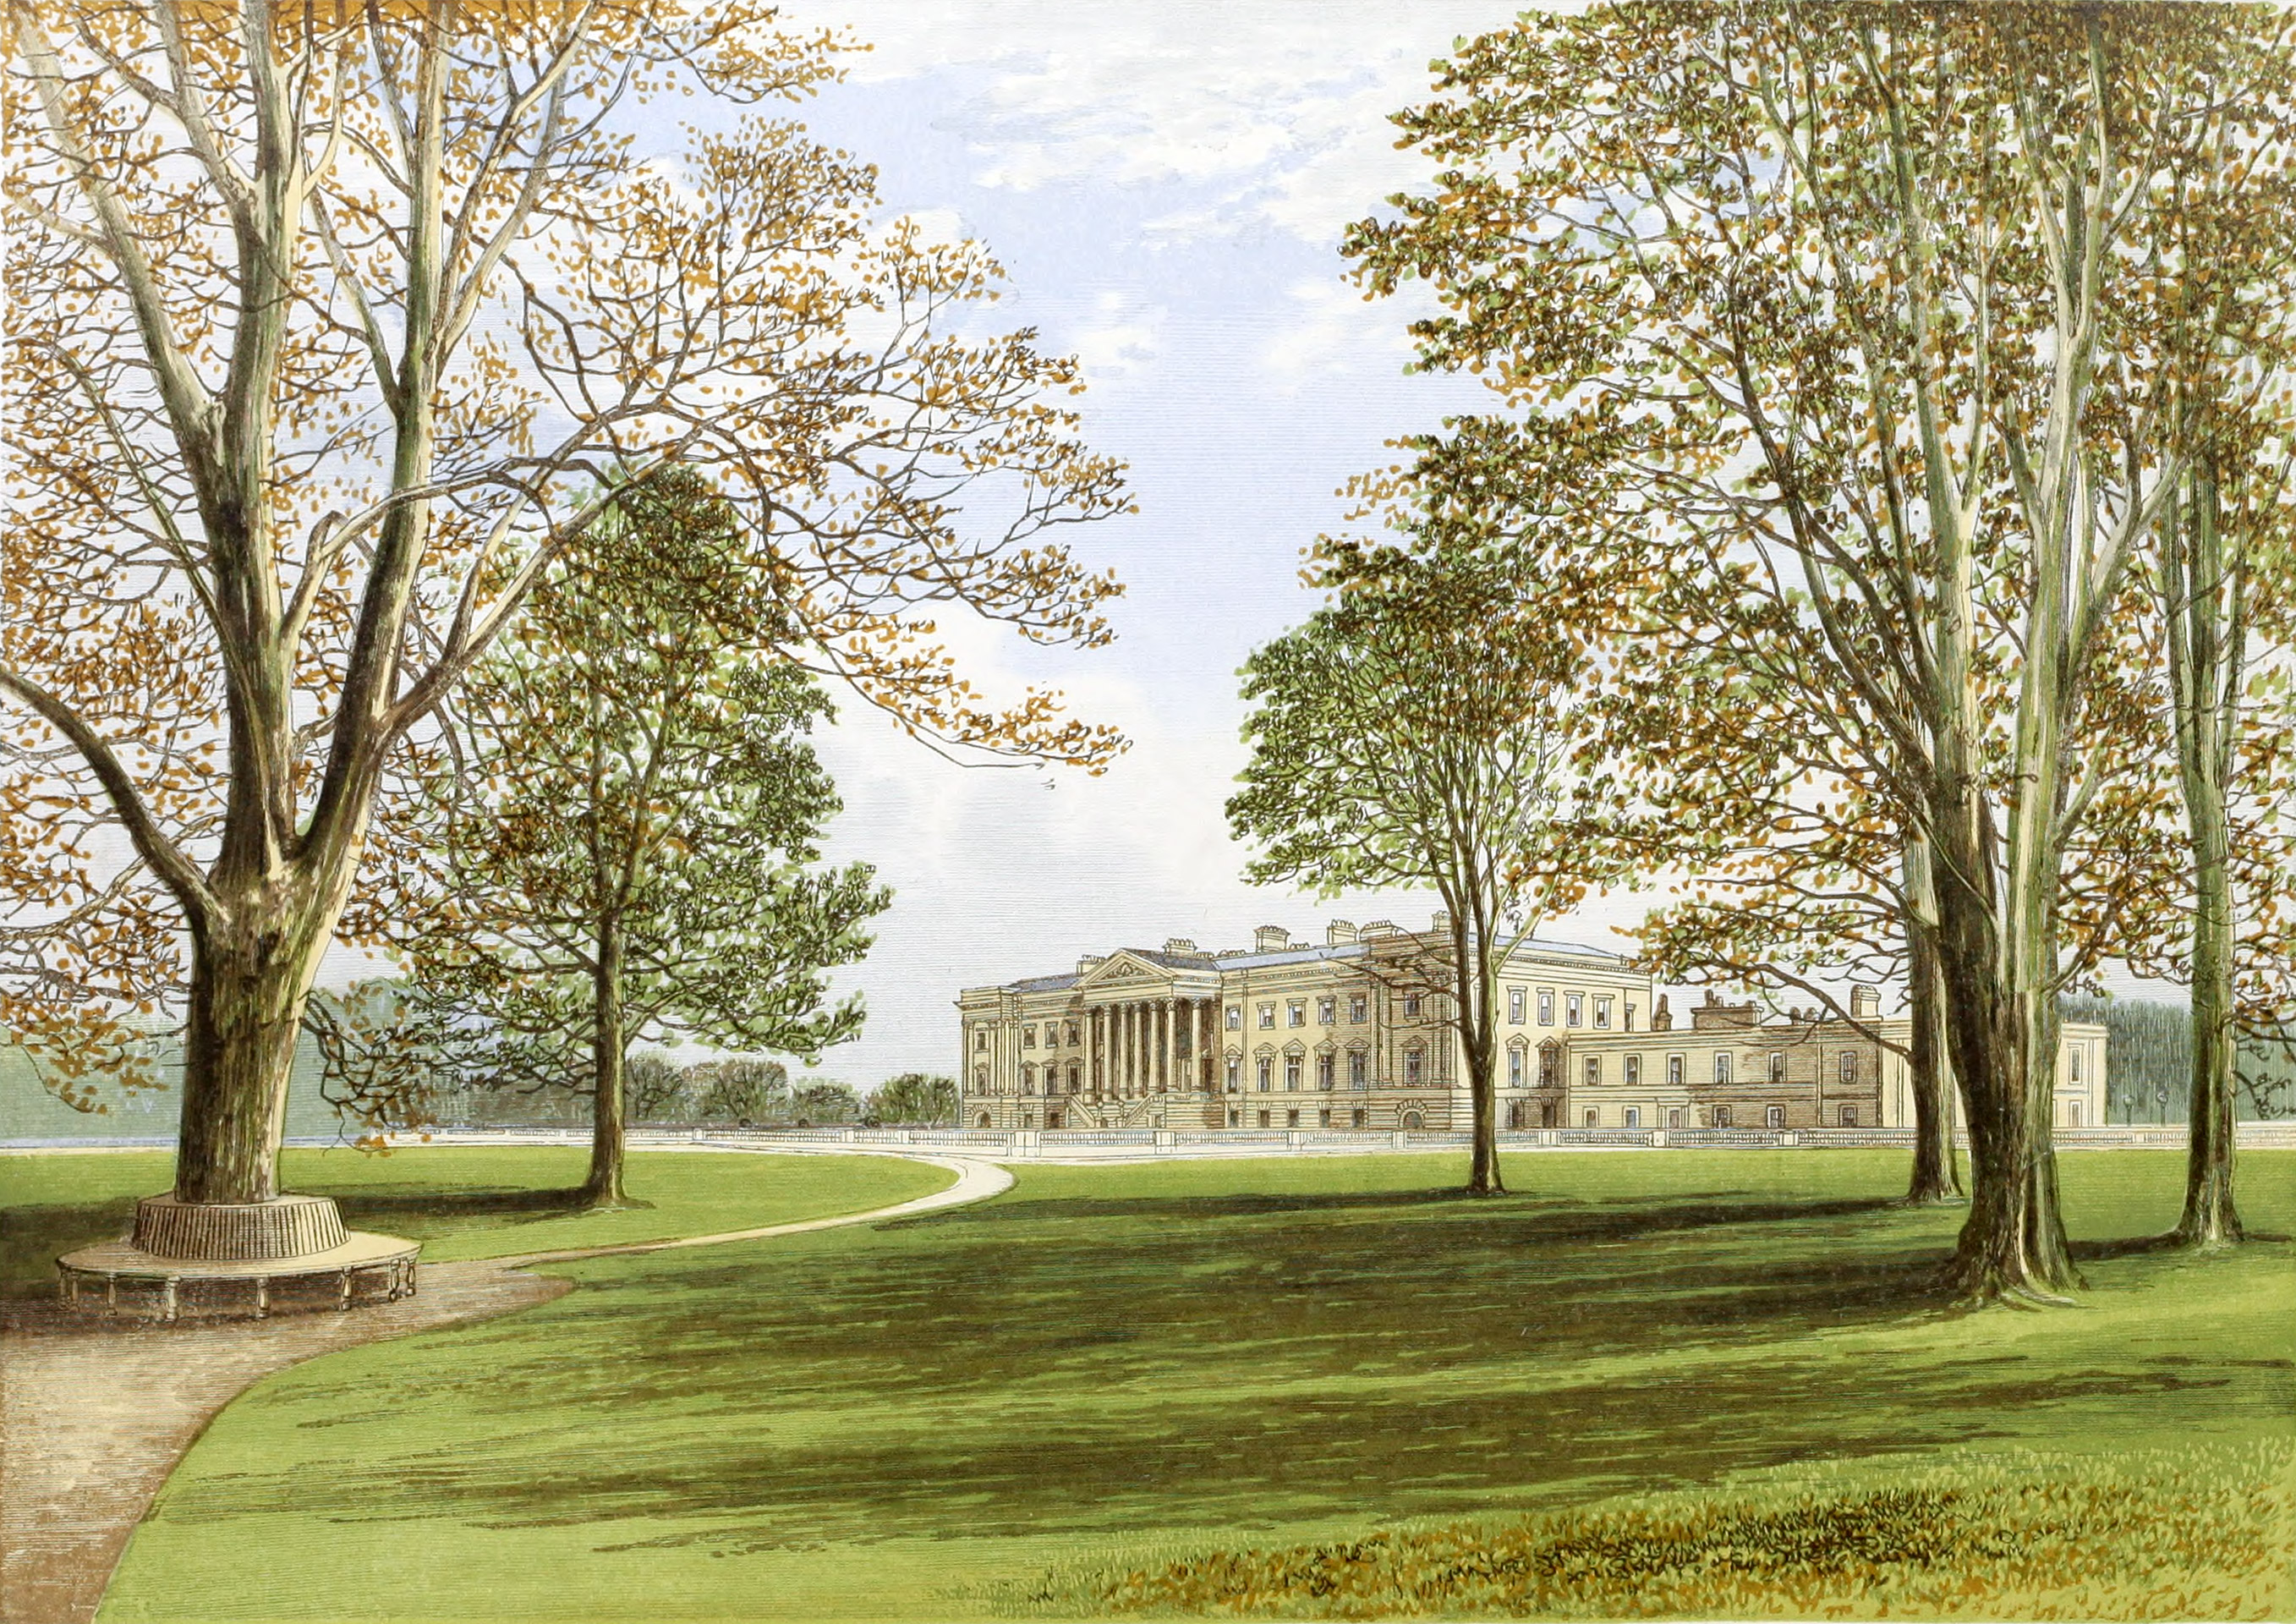 Hamilton Palace